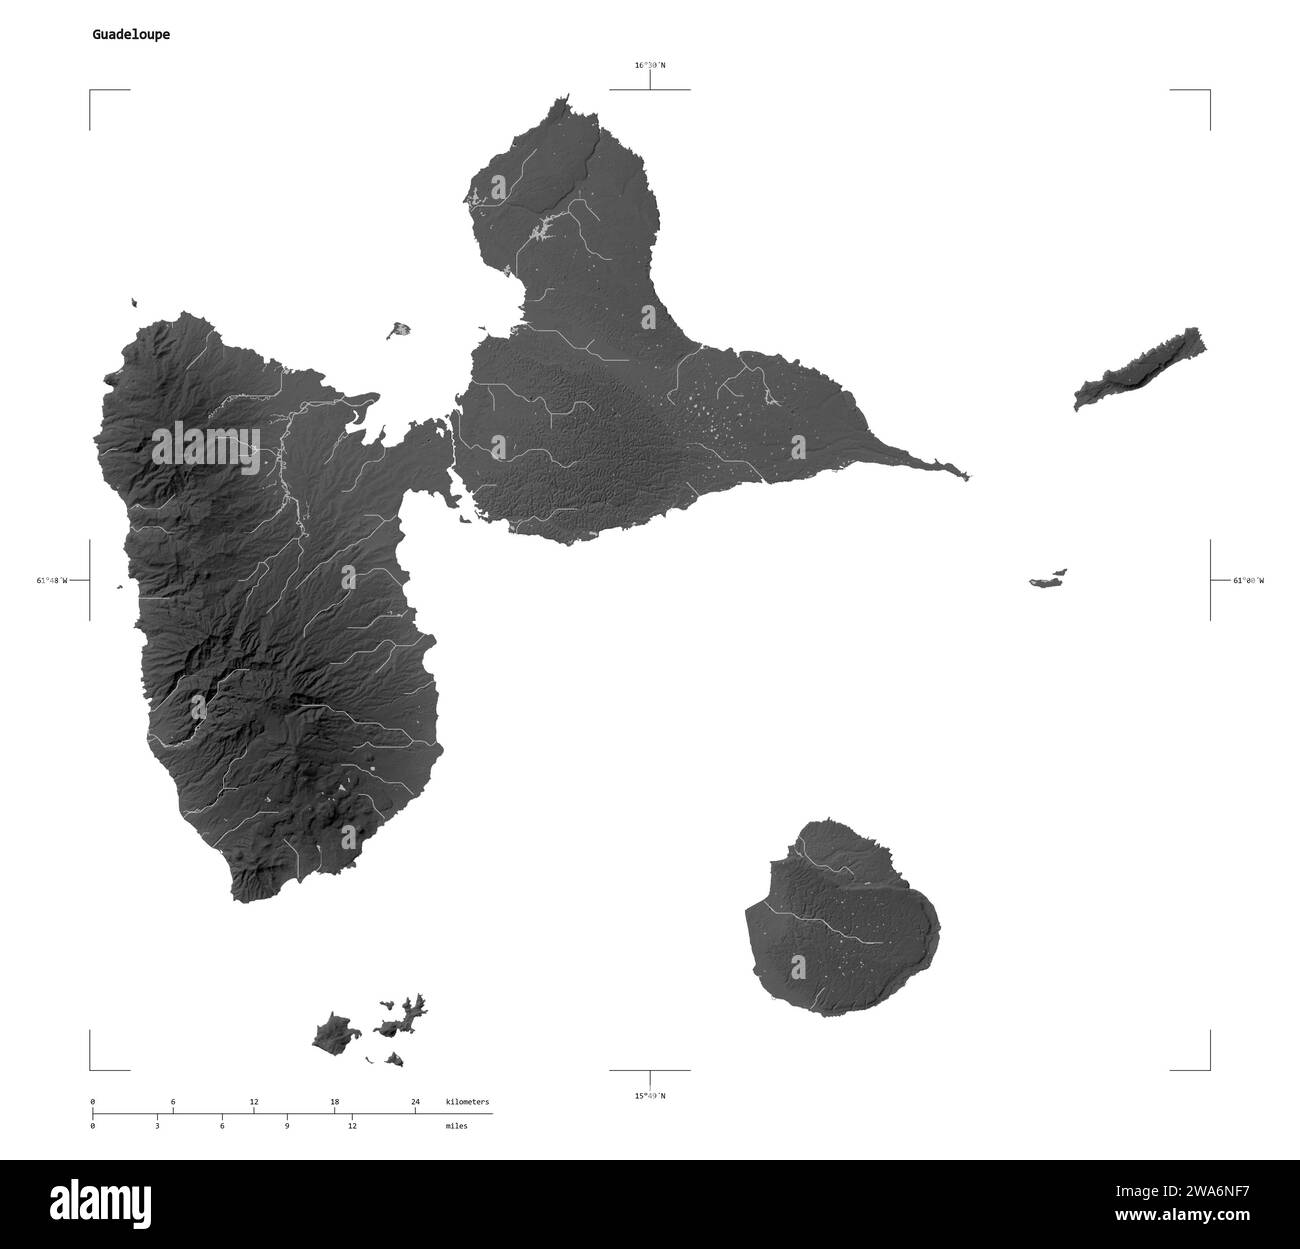 Forma di una mappa di elevazione in scala di grigi con laghi e fiumi della Guadalupa, con scala di distanza e coordinate di confine della mappa, isolati su bianco Foto Stock